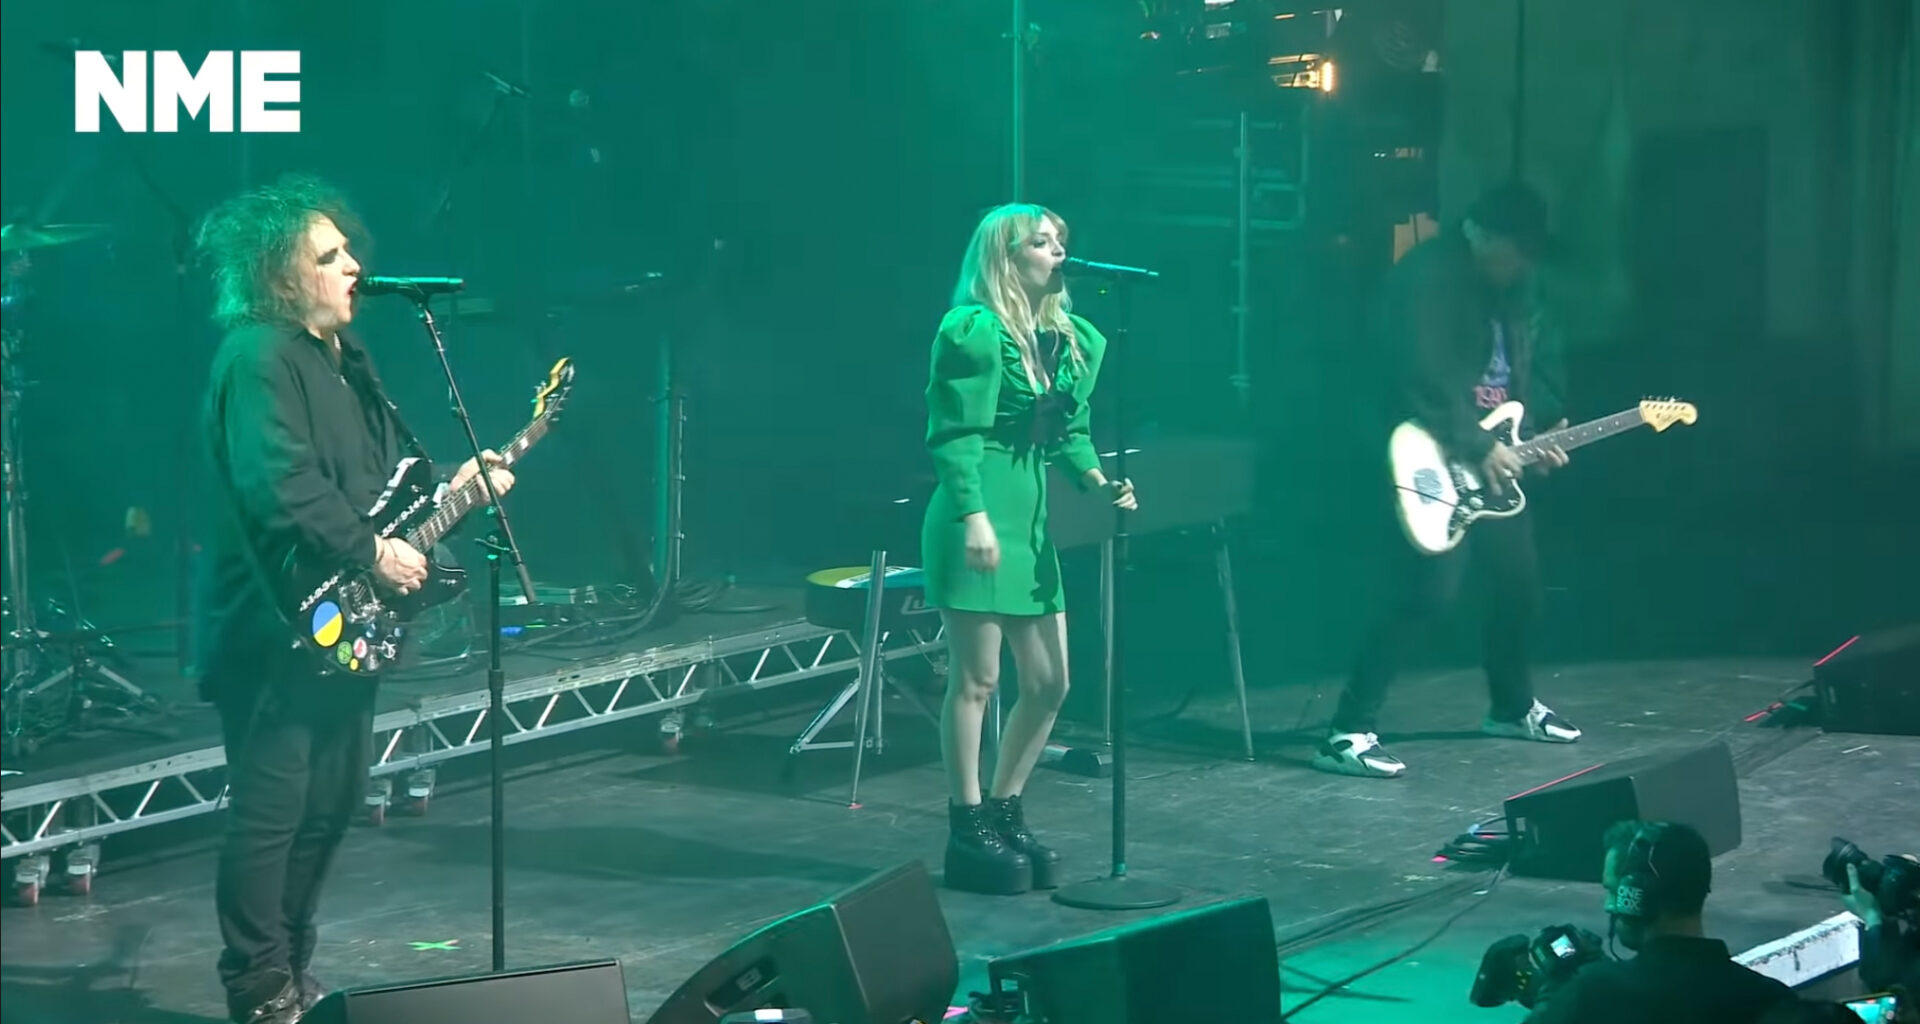 Lauren Mayberry und Robert Smith stehen gemeinsam auf der Bühne und tragen How Not To Drown vor. Lauren trägt ein grünes Kleid, ebenso ist die Bühne in grünes Licht getaucht.